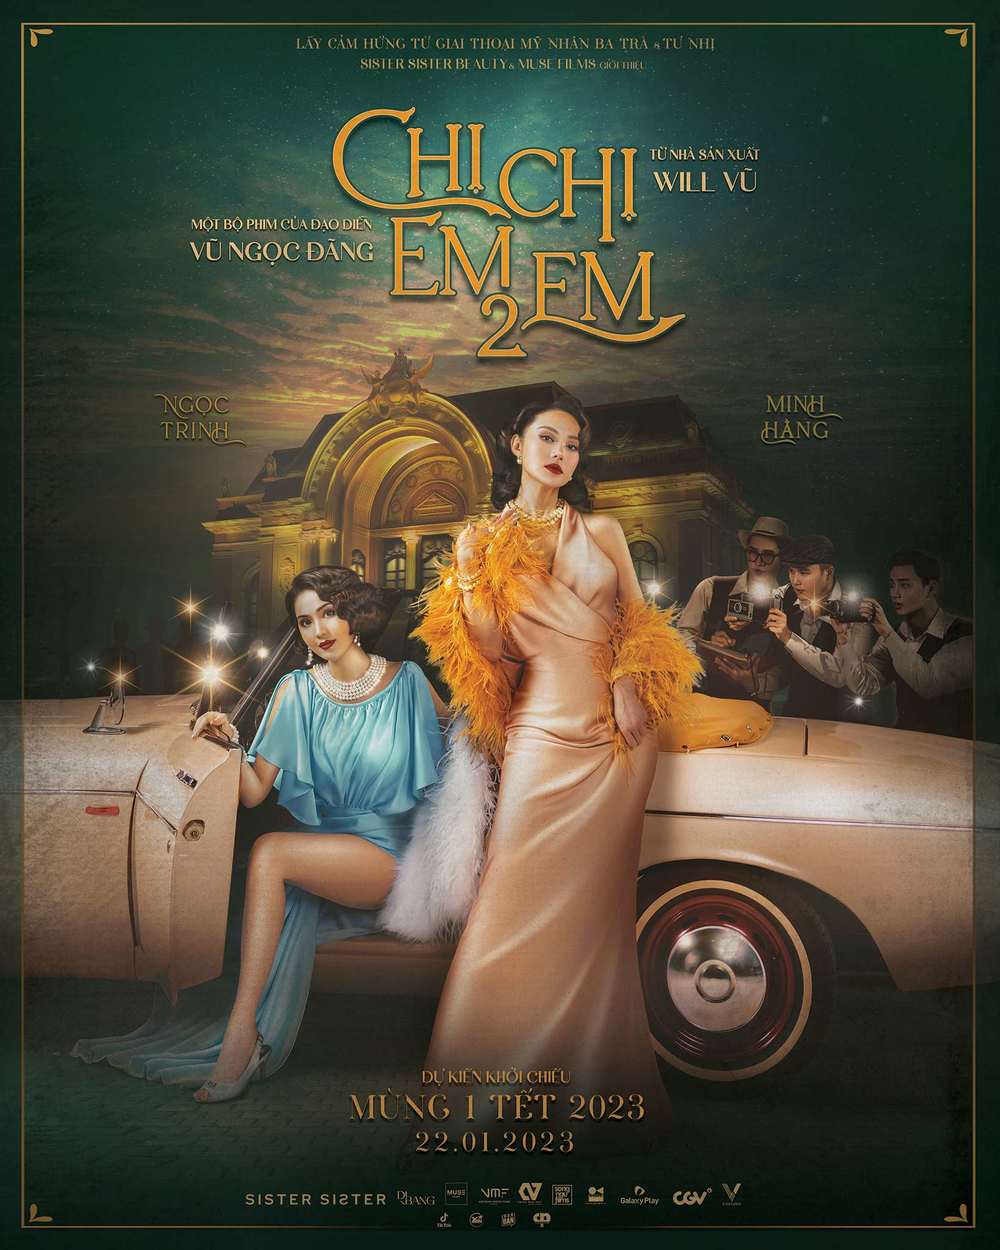  Poster Chị Chị Em Em 2 chính thức ra mắt khán giả.